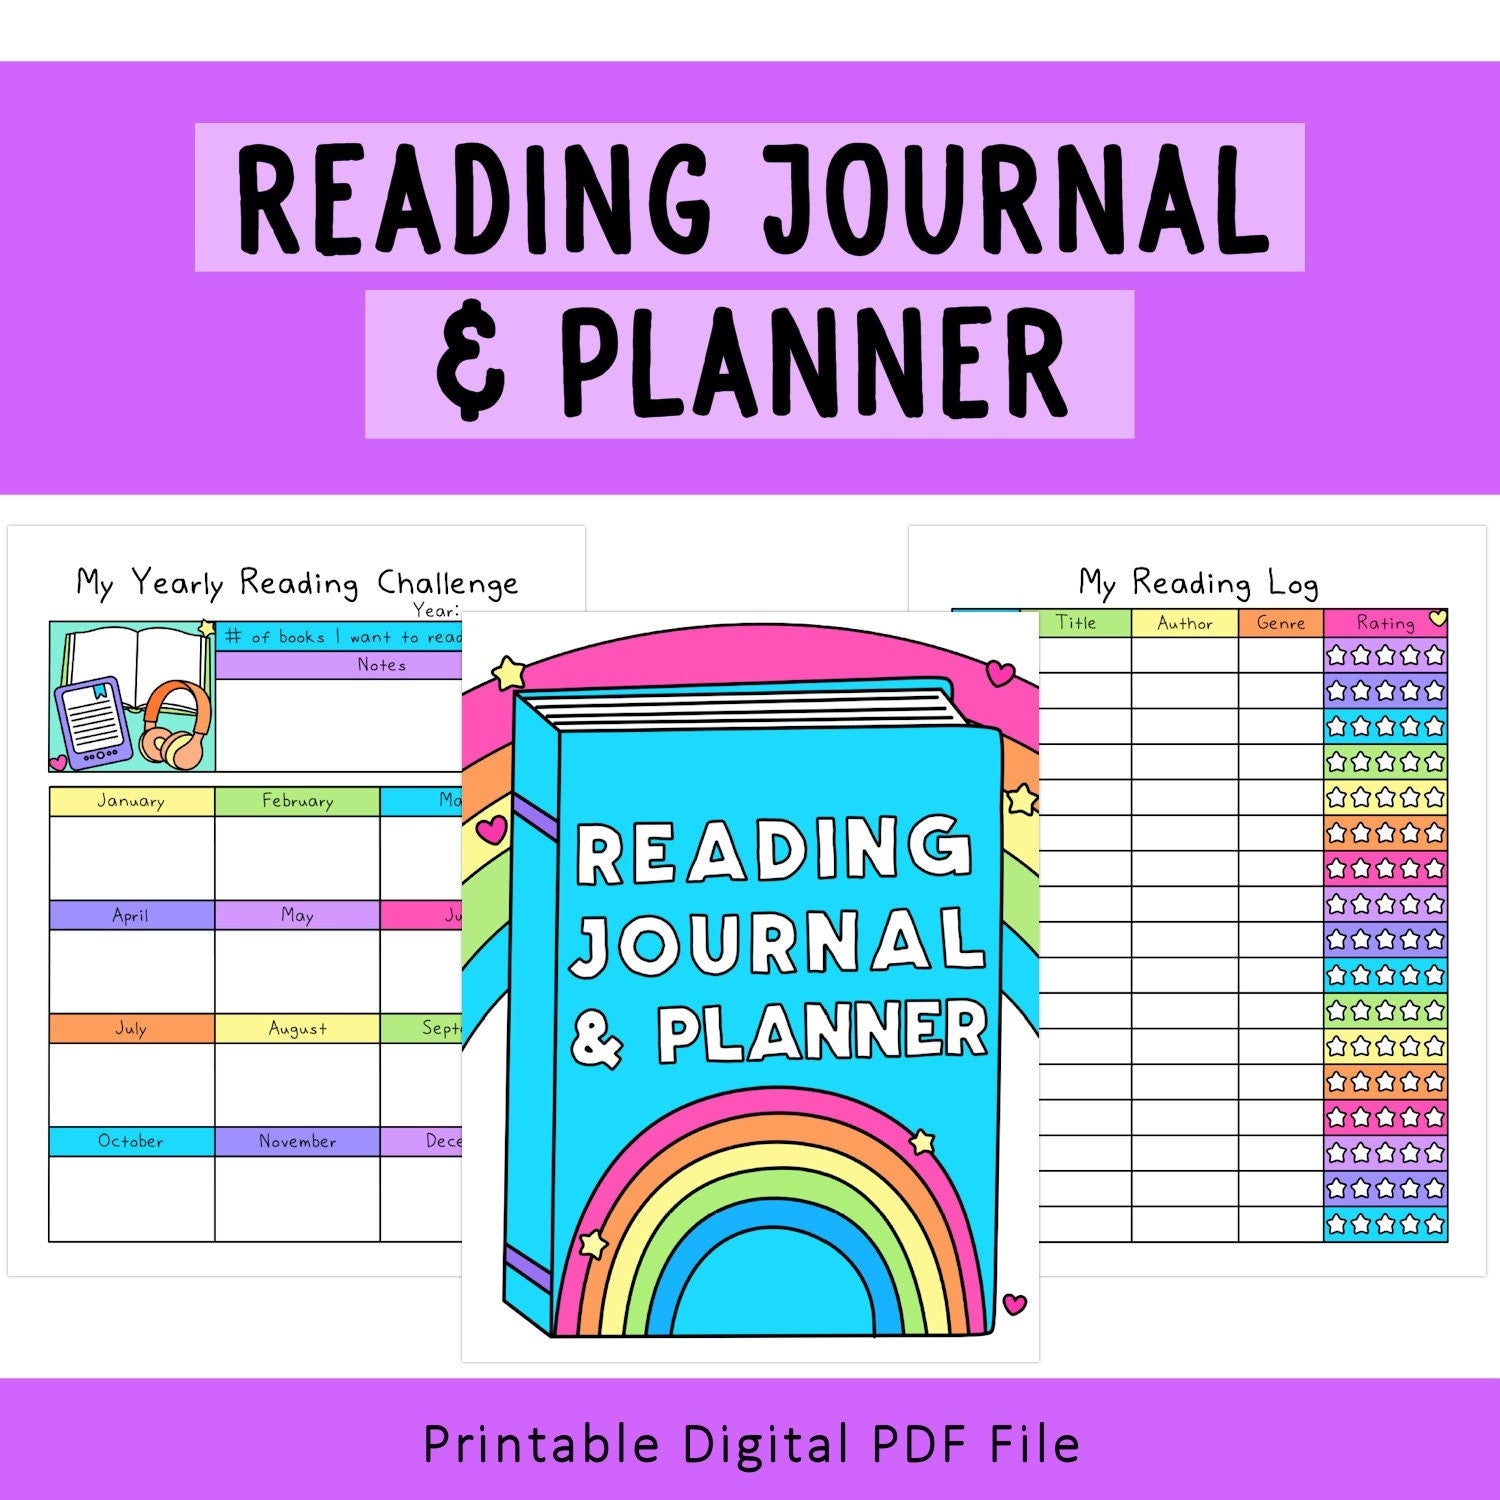 Reading Journal & Planner